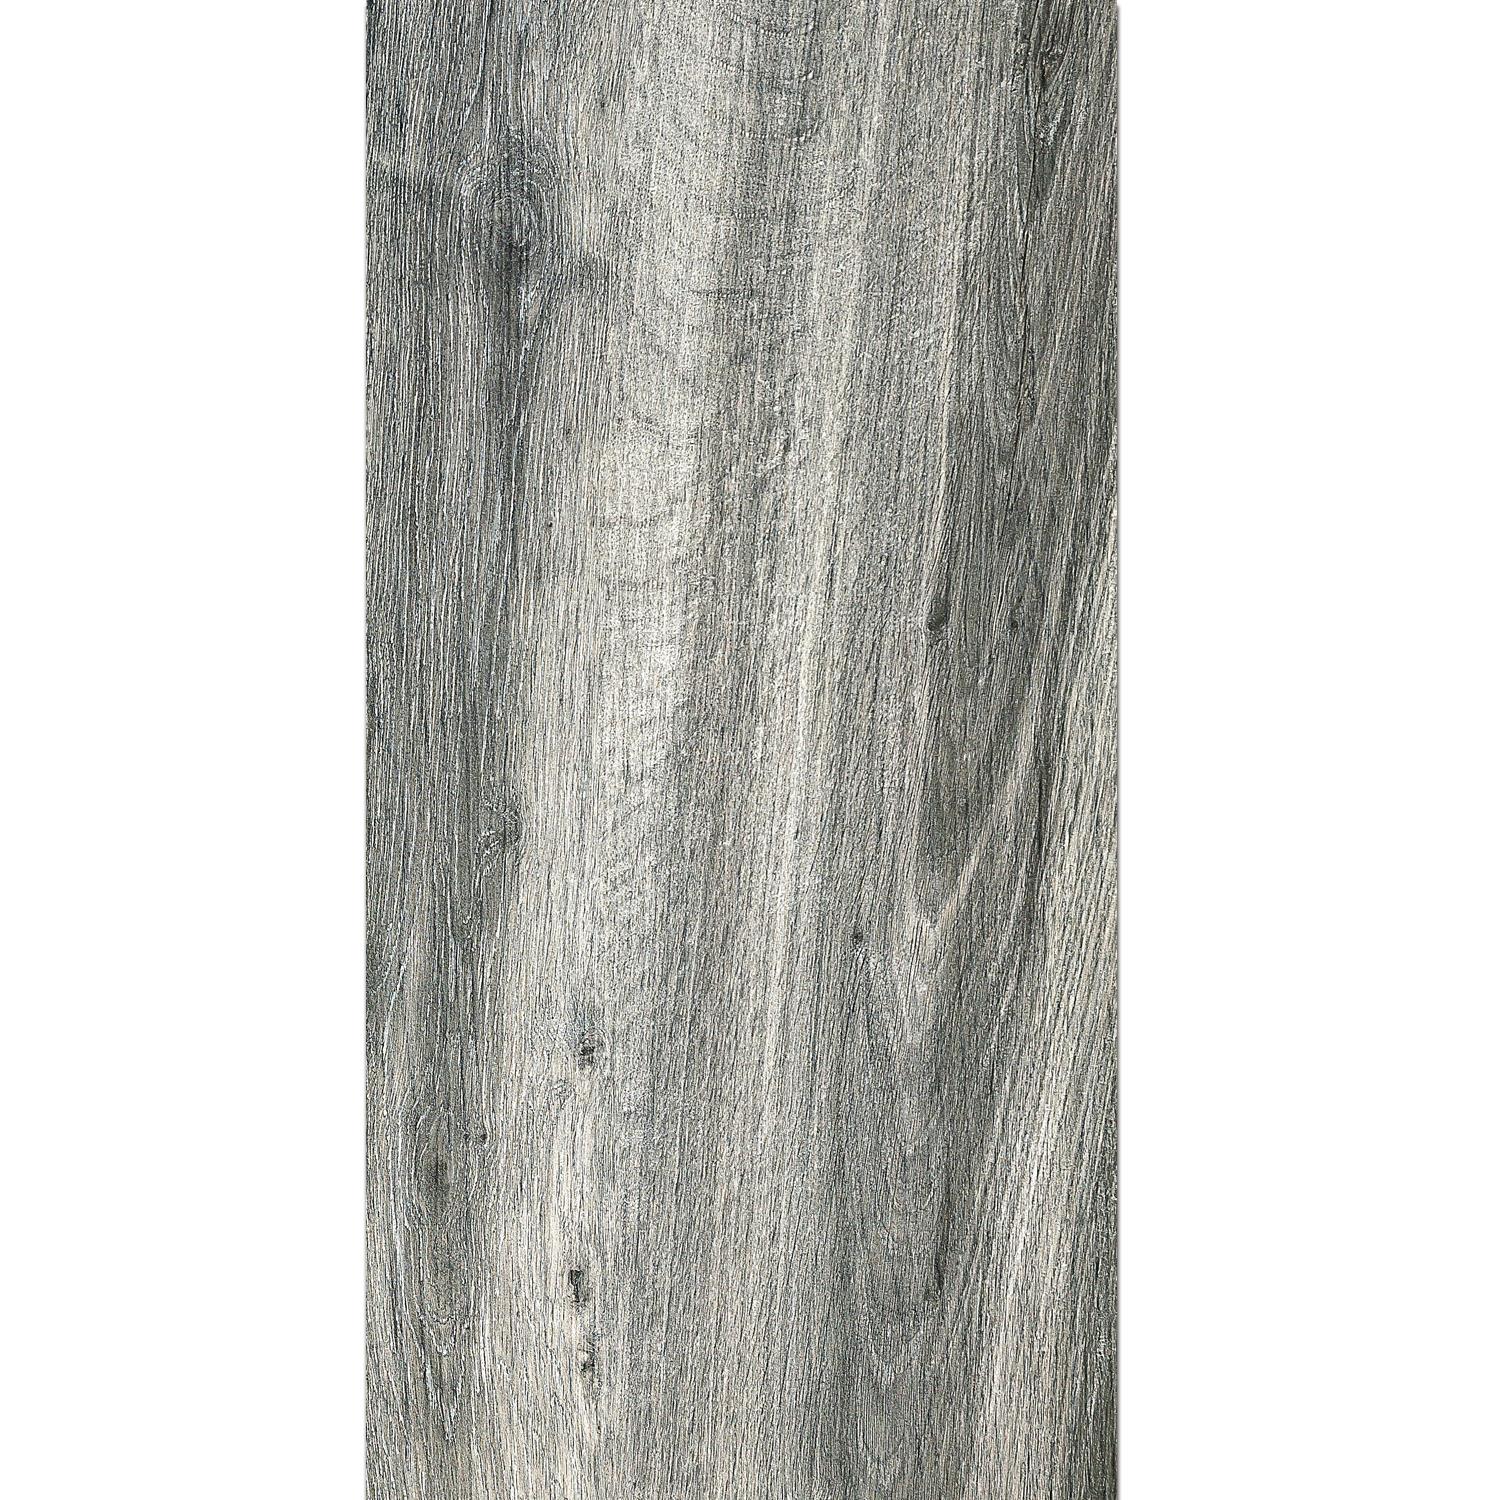 Terrassenplatten Starwood Holzoptik Grey 45x90cm